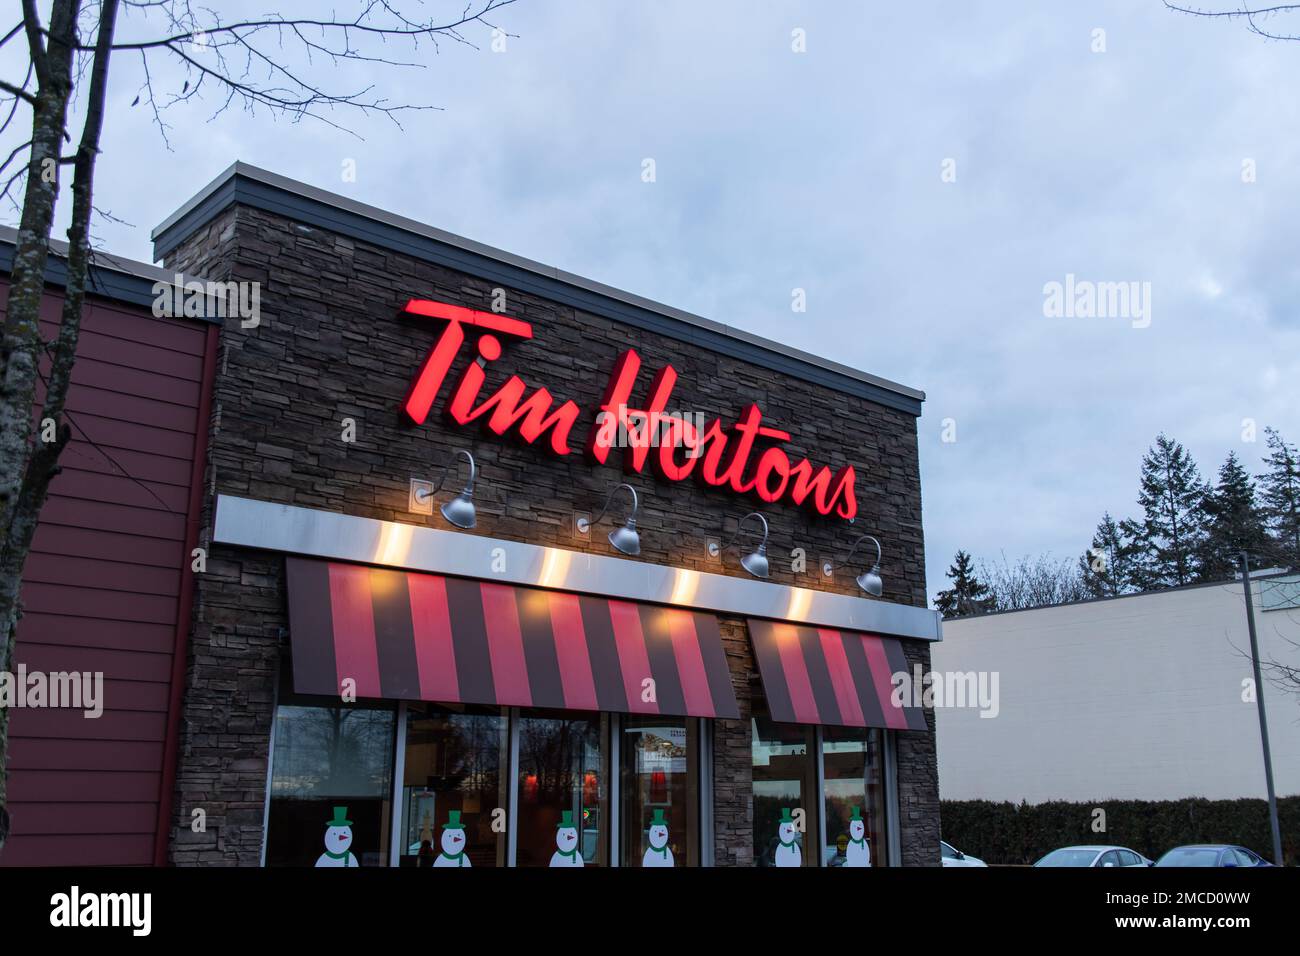 Signe de Tim Hortons. Tim Hortons Inc. Est une chaîne de cafés et de restaurants canadiens de Toronto. C'est la plus grande chaîne de restaurants à service rapide au Canada Banque D'Images